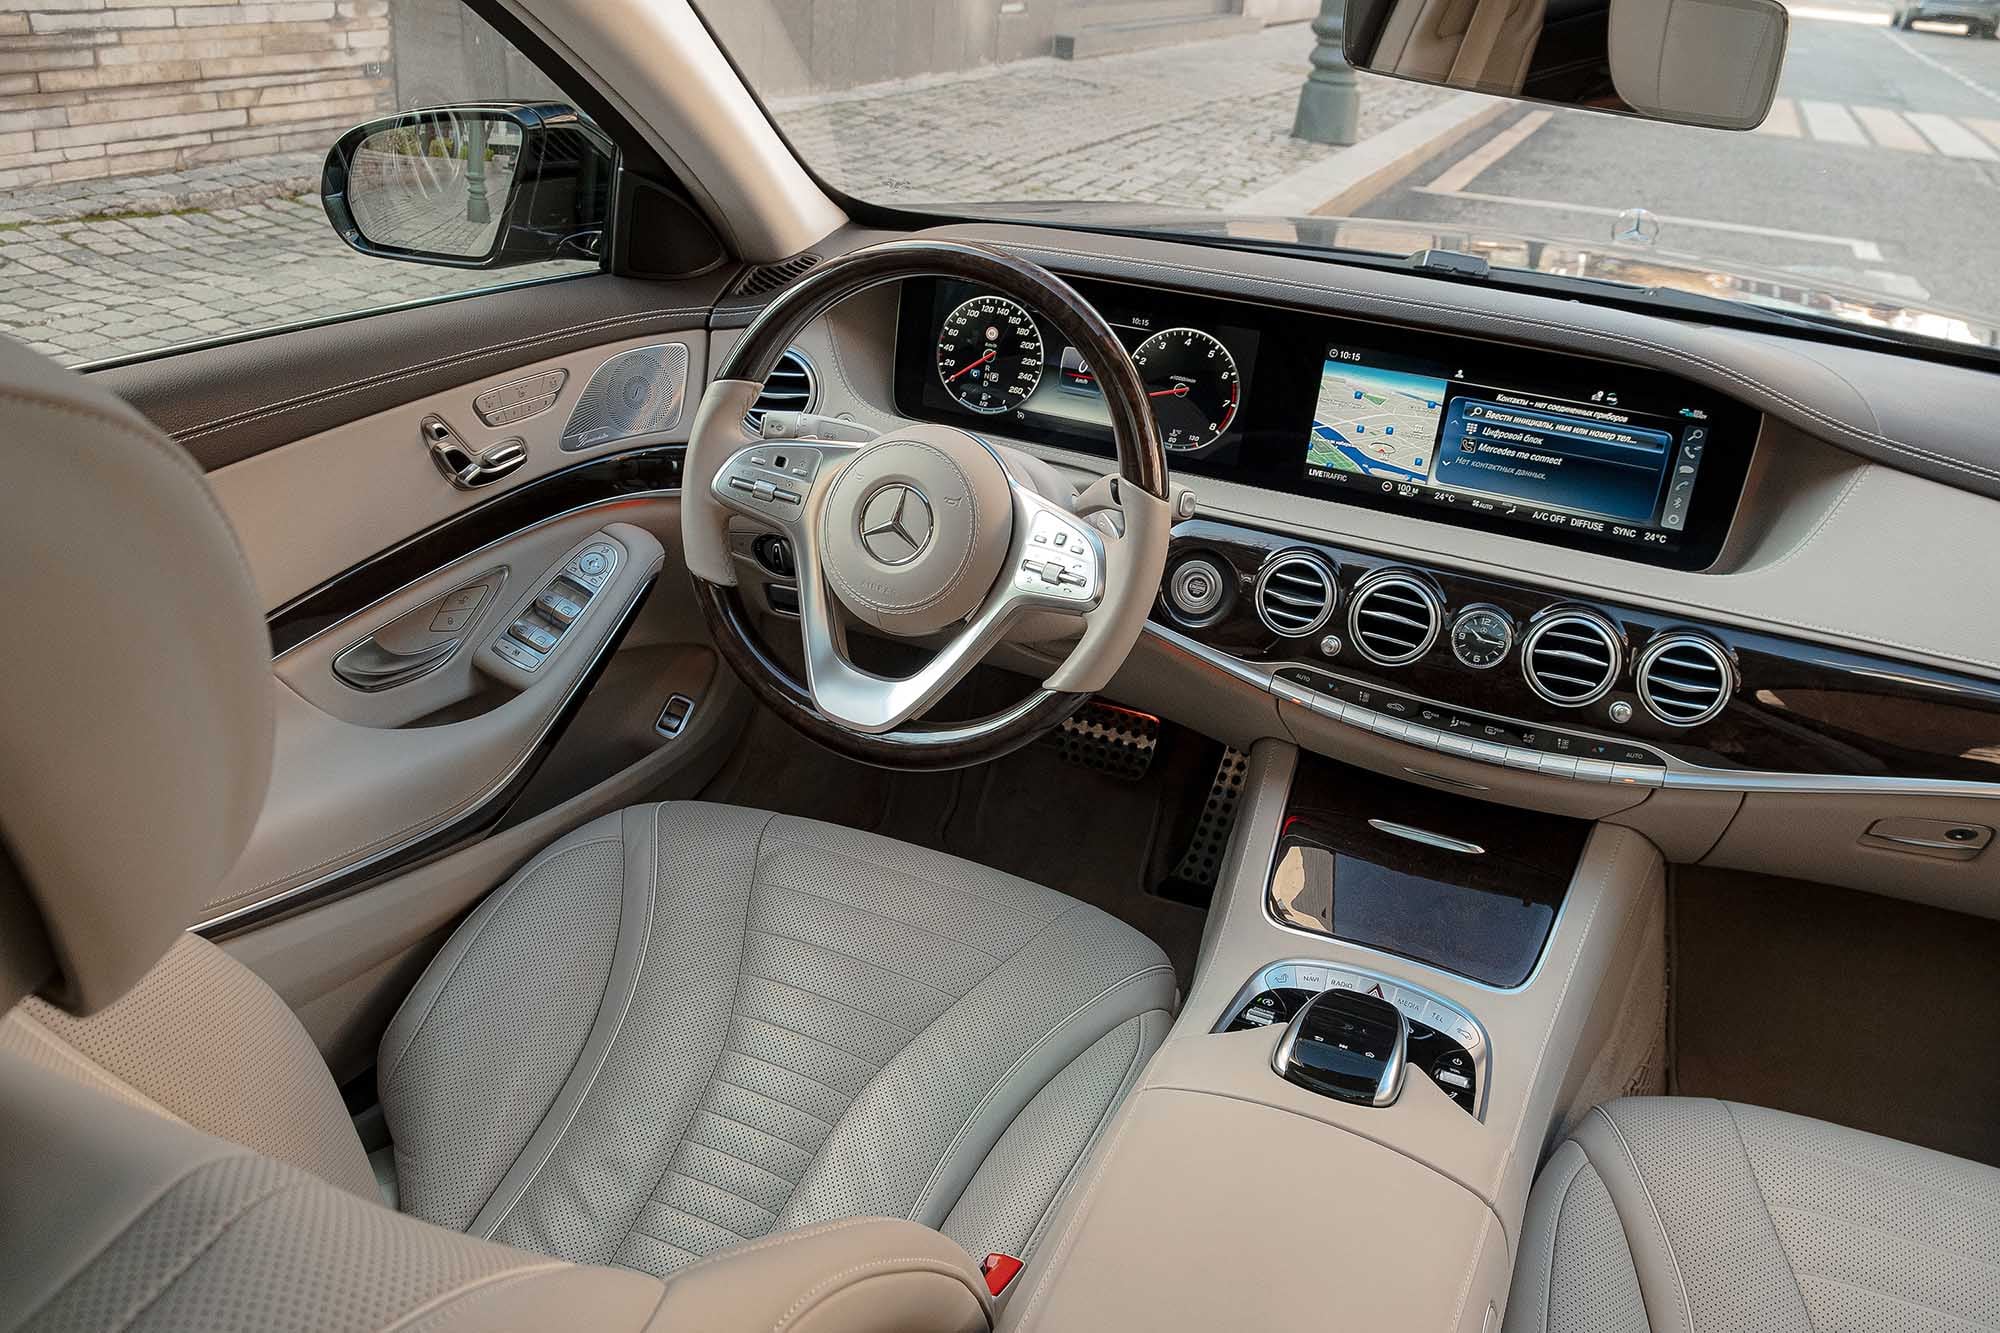 Аренда  Mercedes Benz S-Class W222 S500  4 класса 2015 года в городе Минск от 160 $/сутки,  двигатель: Бензин , объем 4.7 Biturbo литров, КАСКО (Мультидрайв), без водителя, вид 4 - West Group